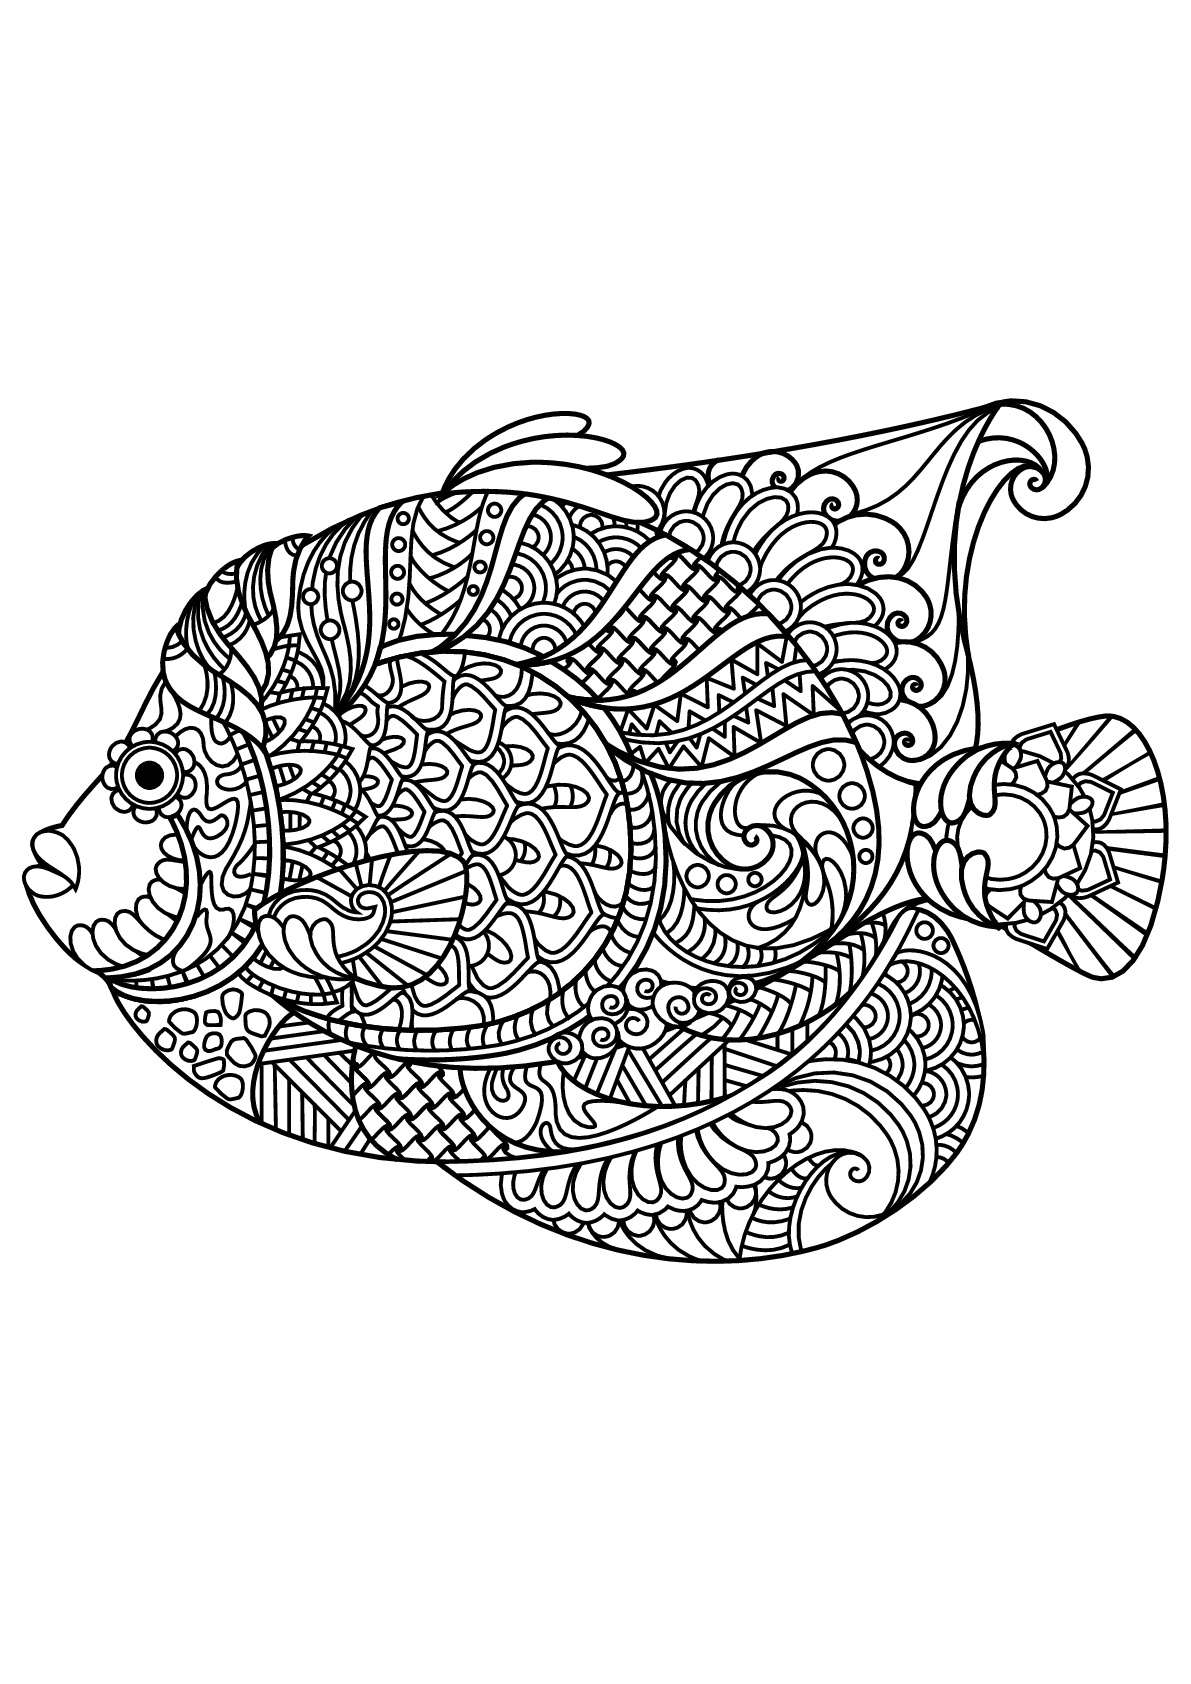 Peixes, com padrões harmoniosos e complexos